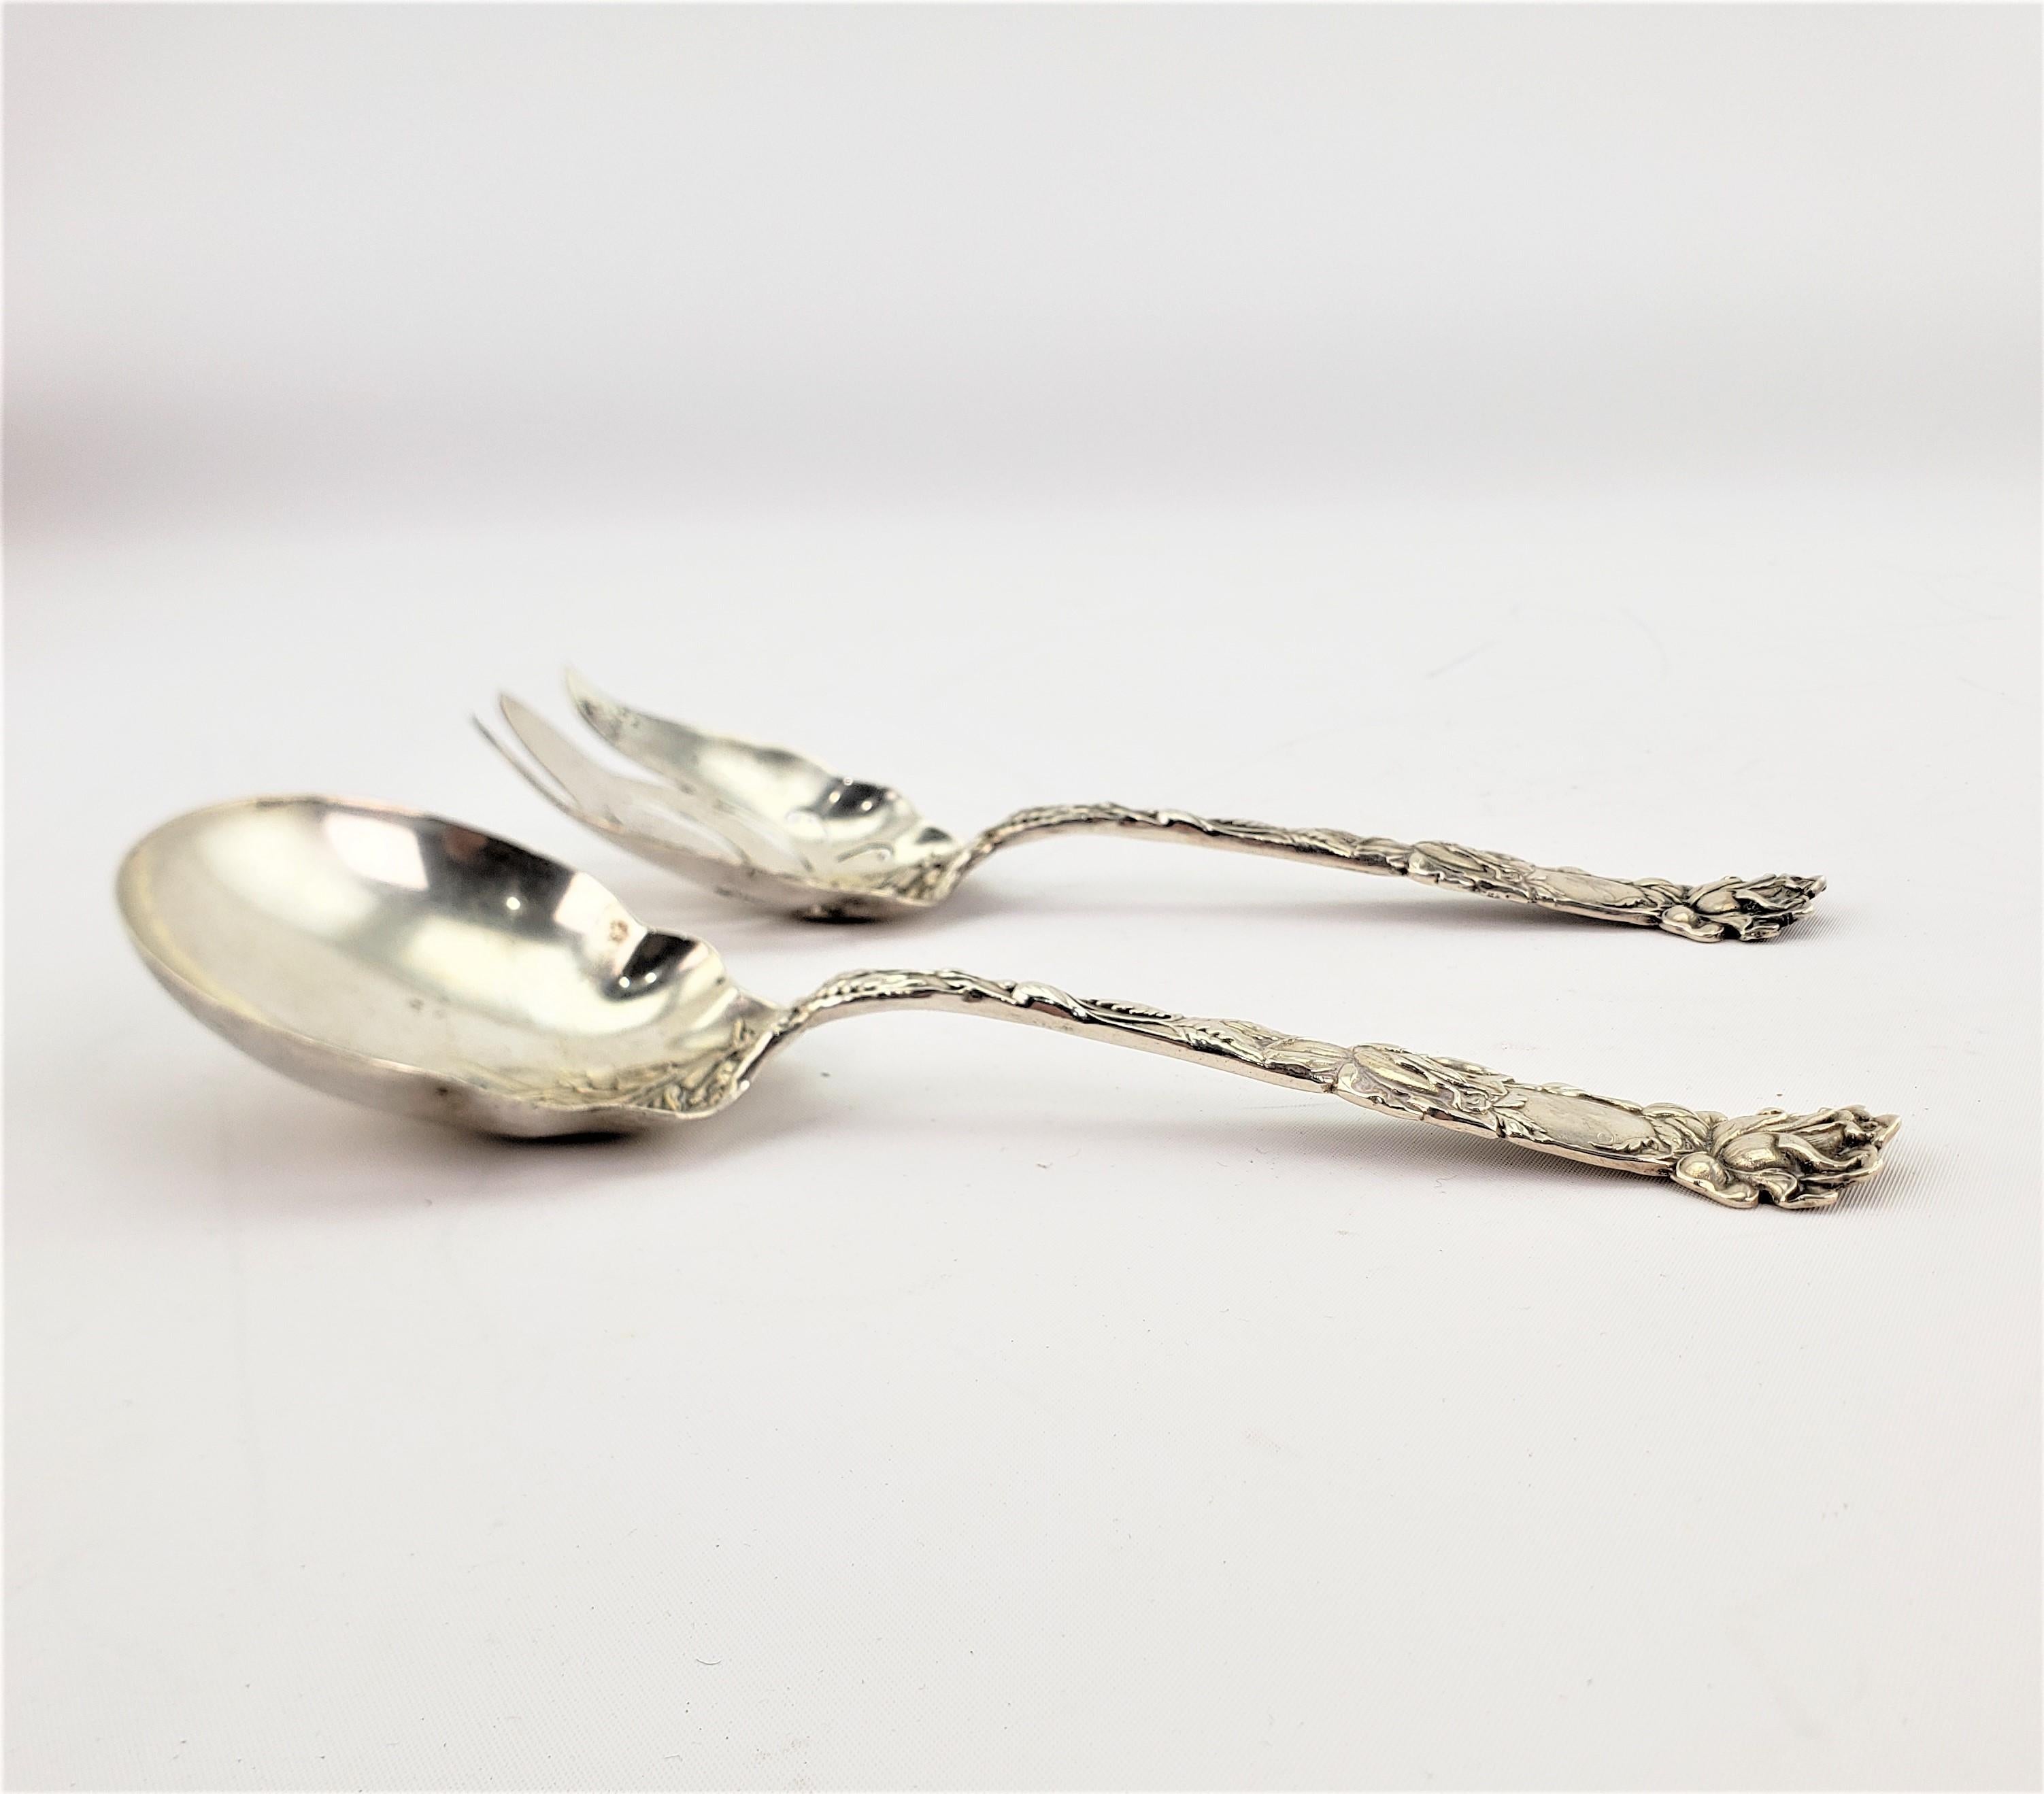 art nouveau spoon